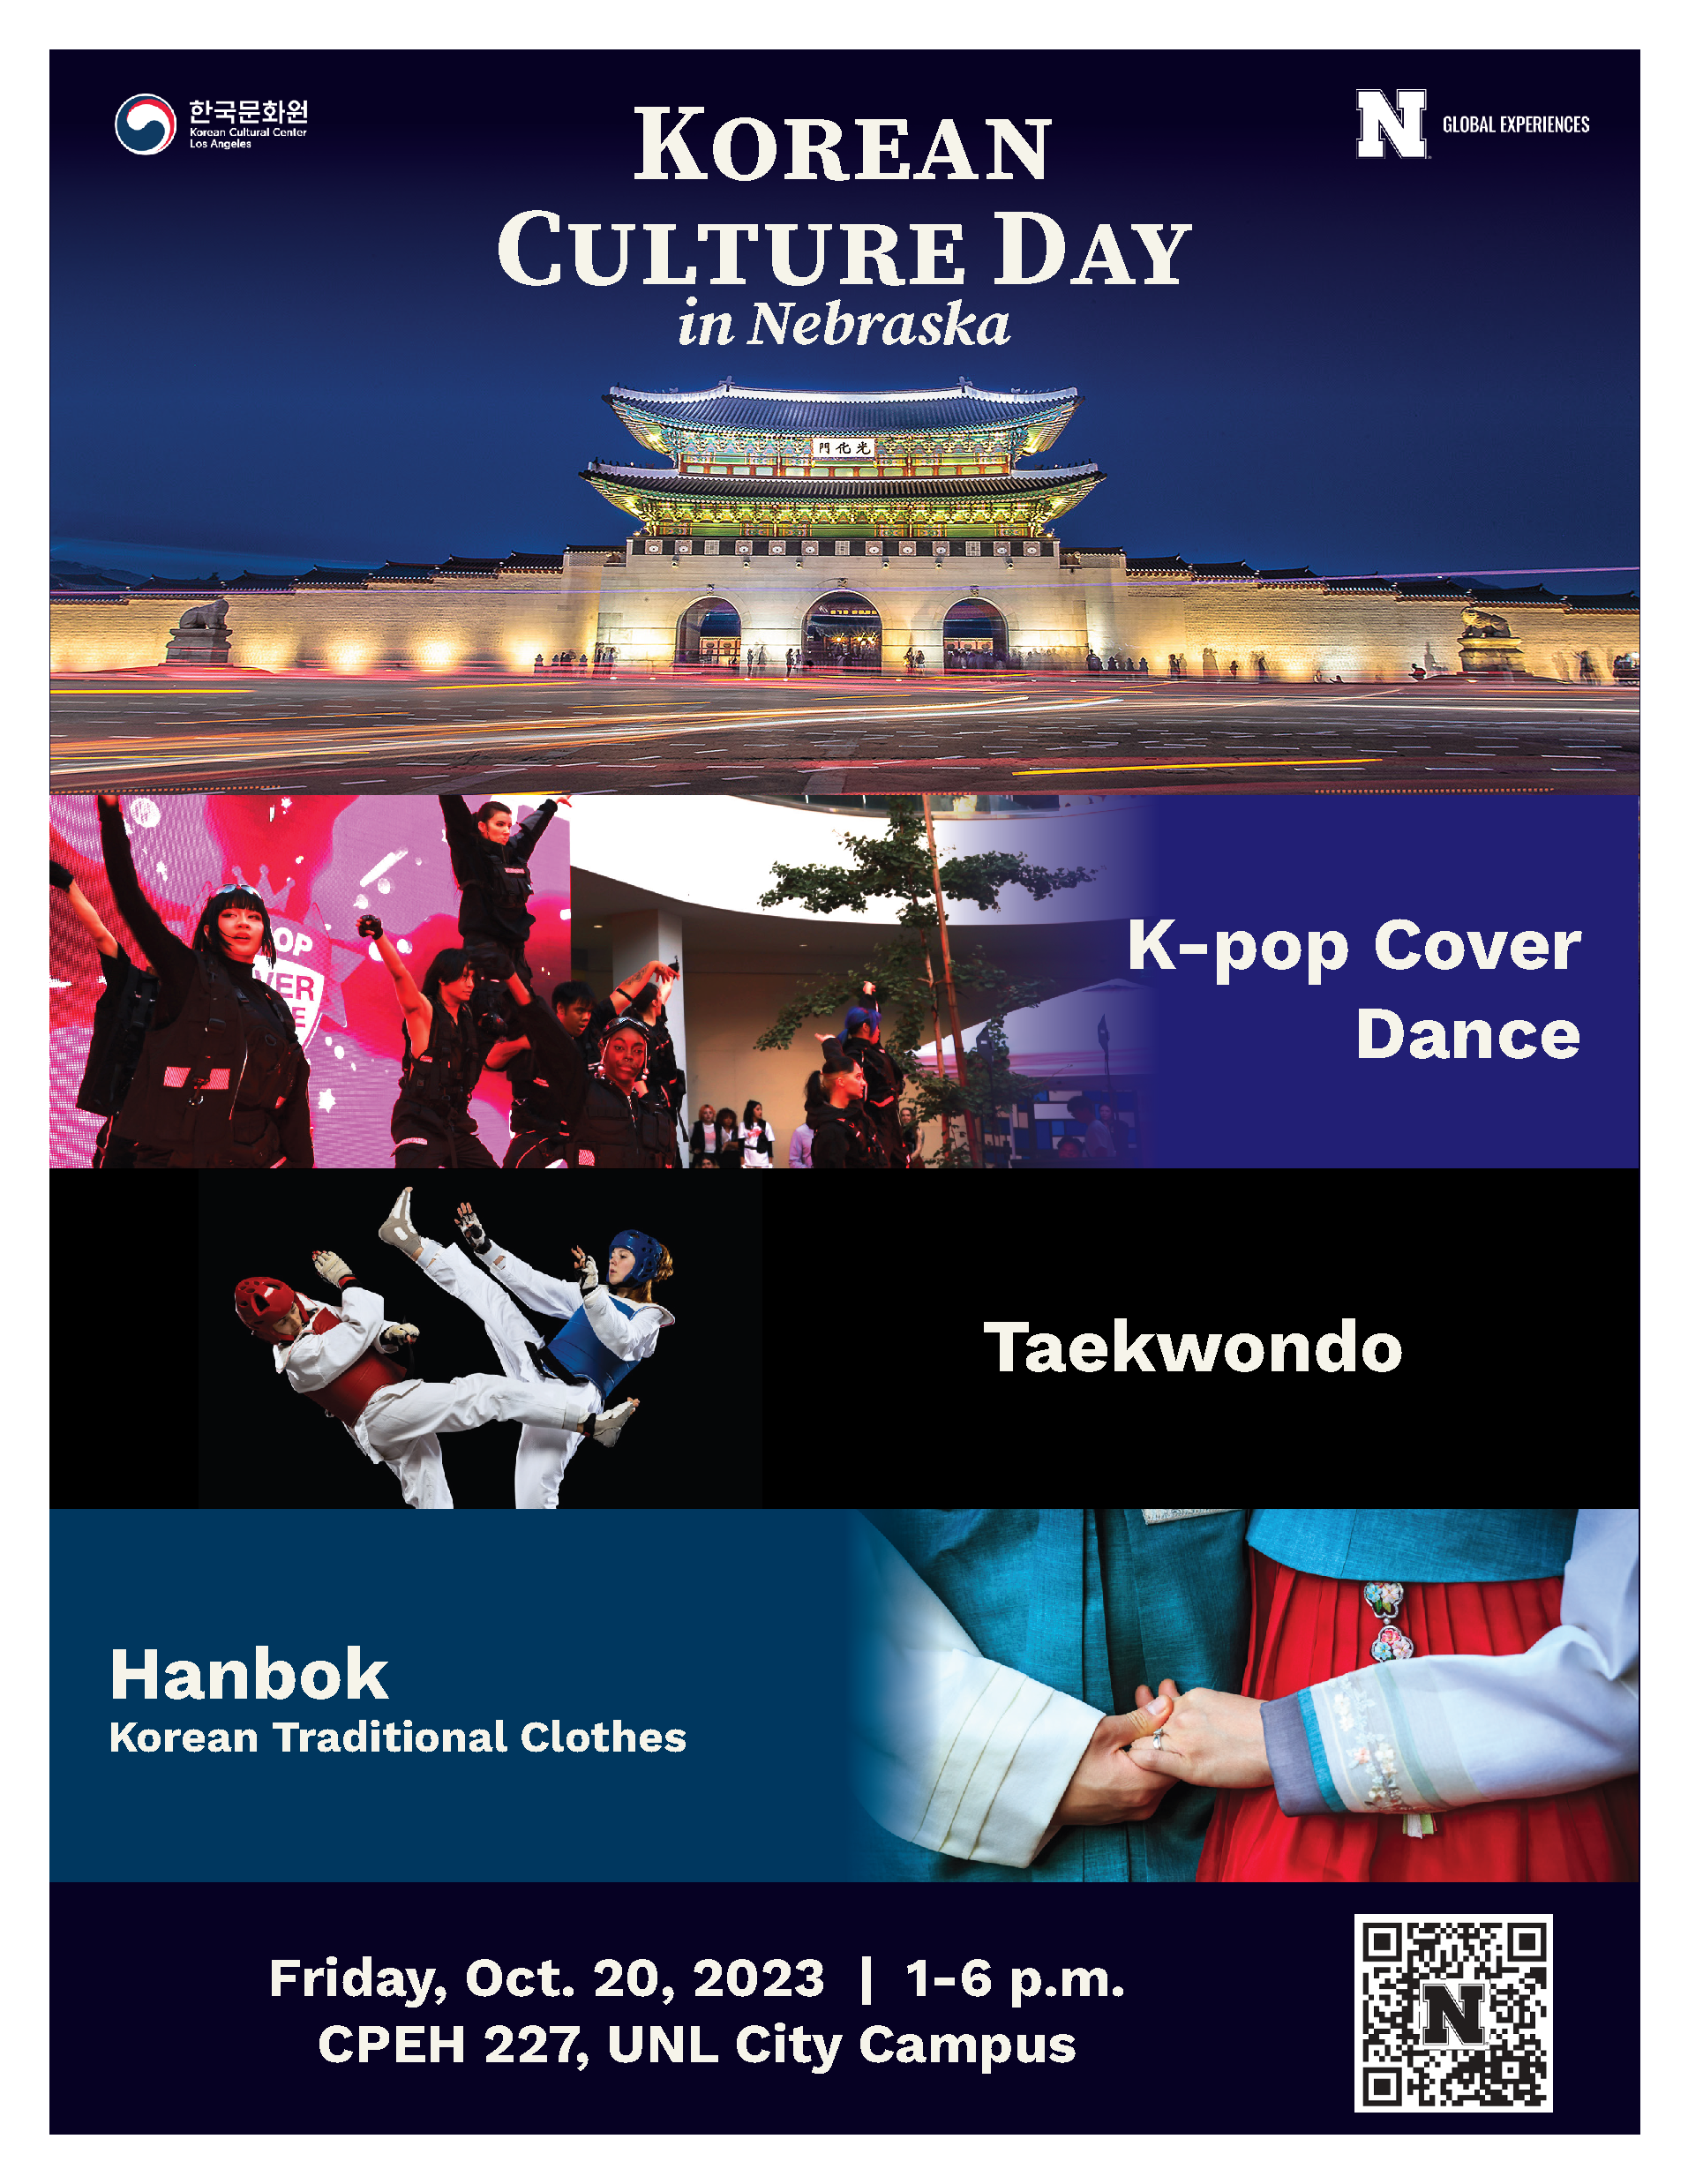 Korean Culture Day in Nebraska